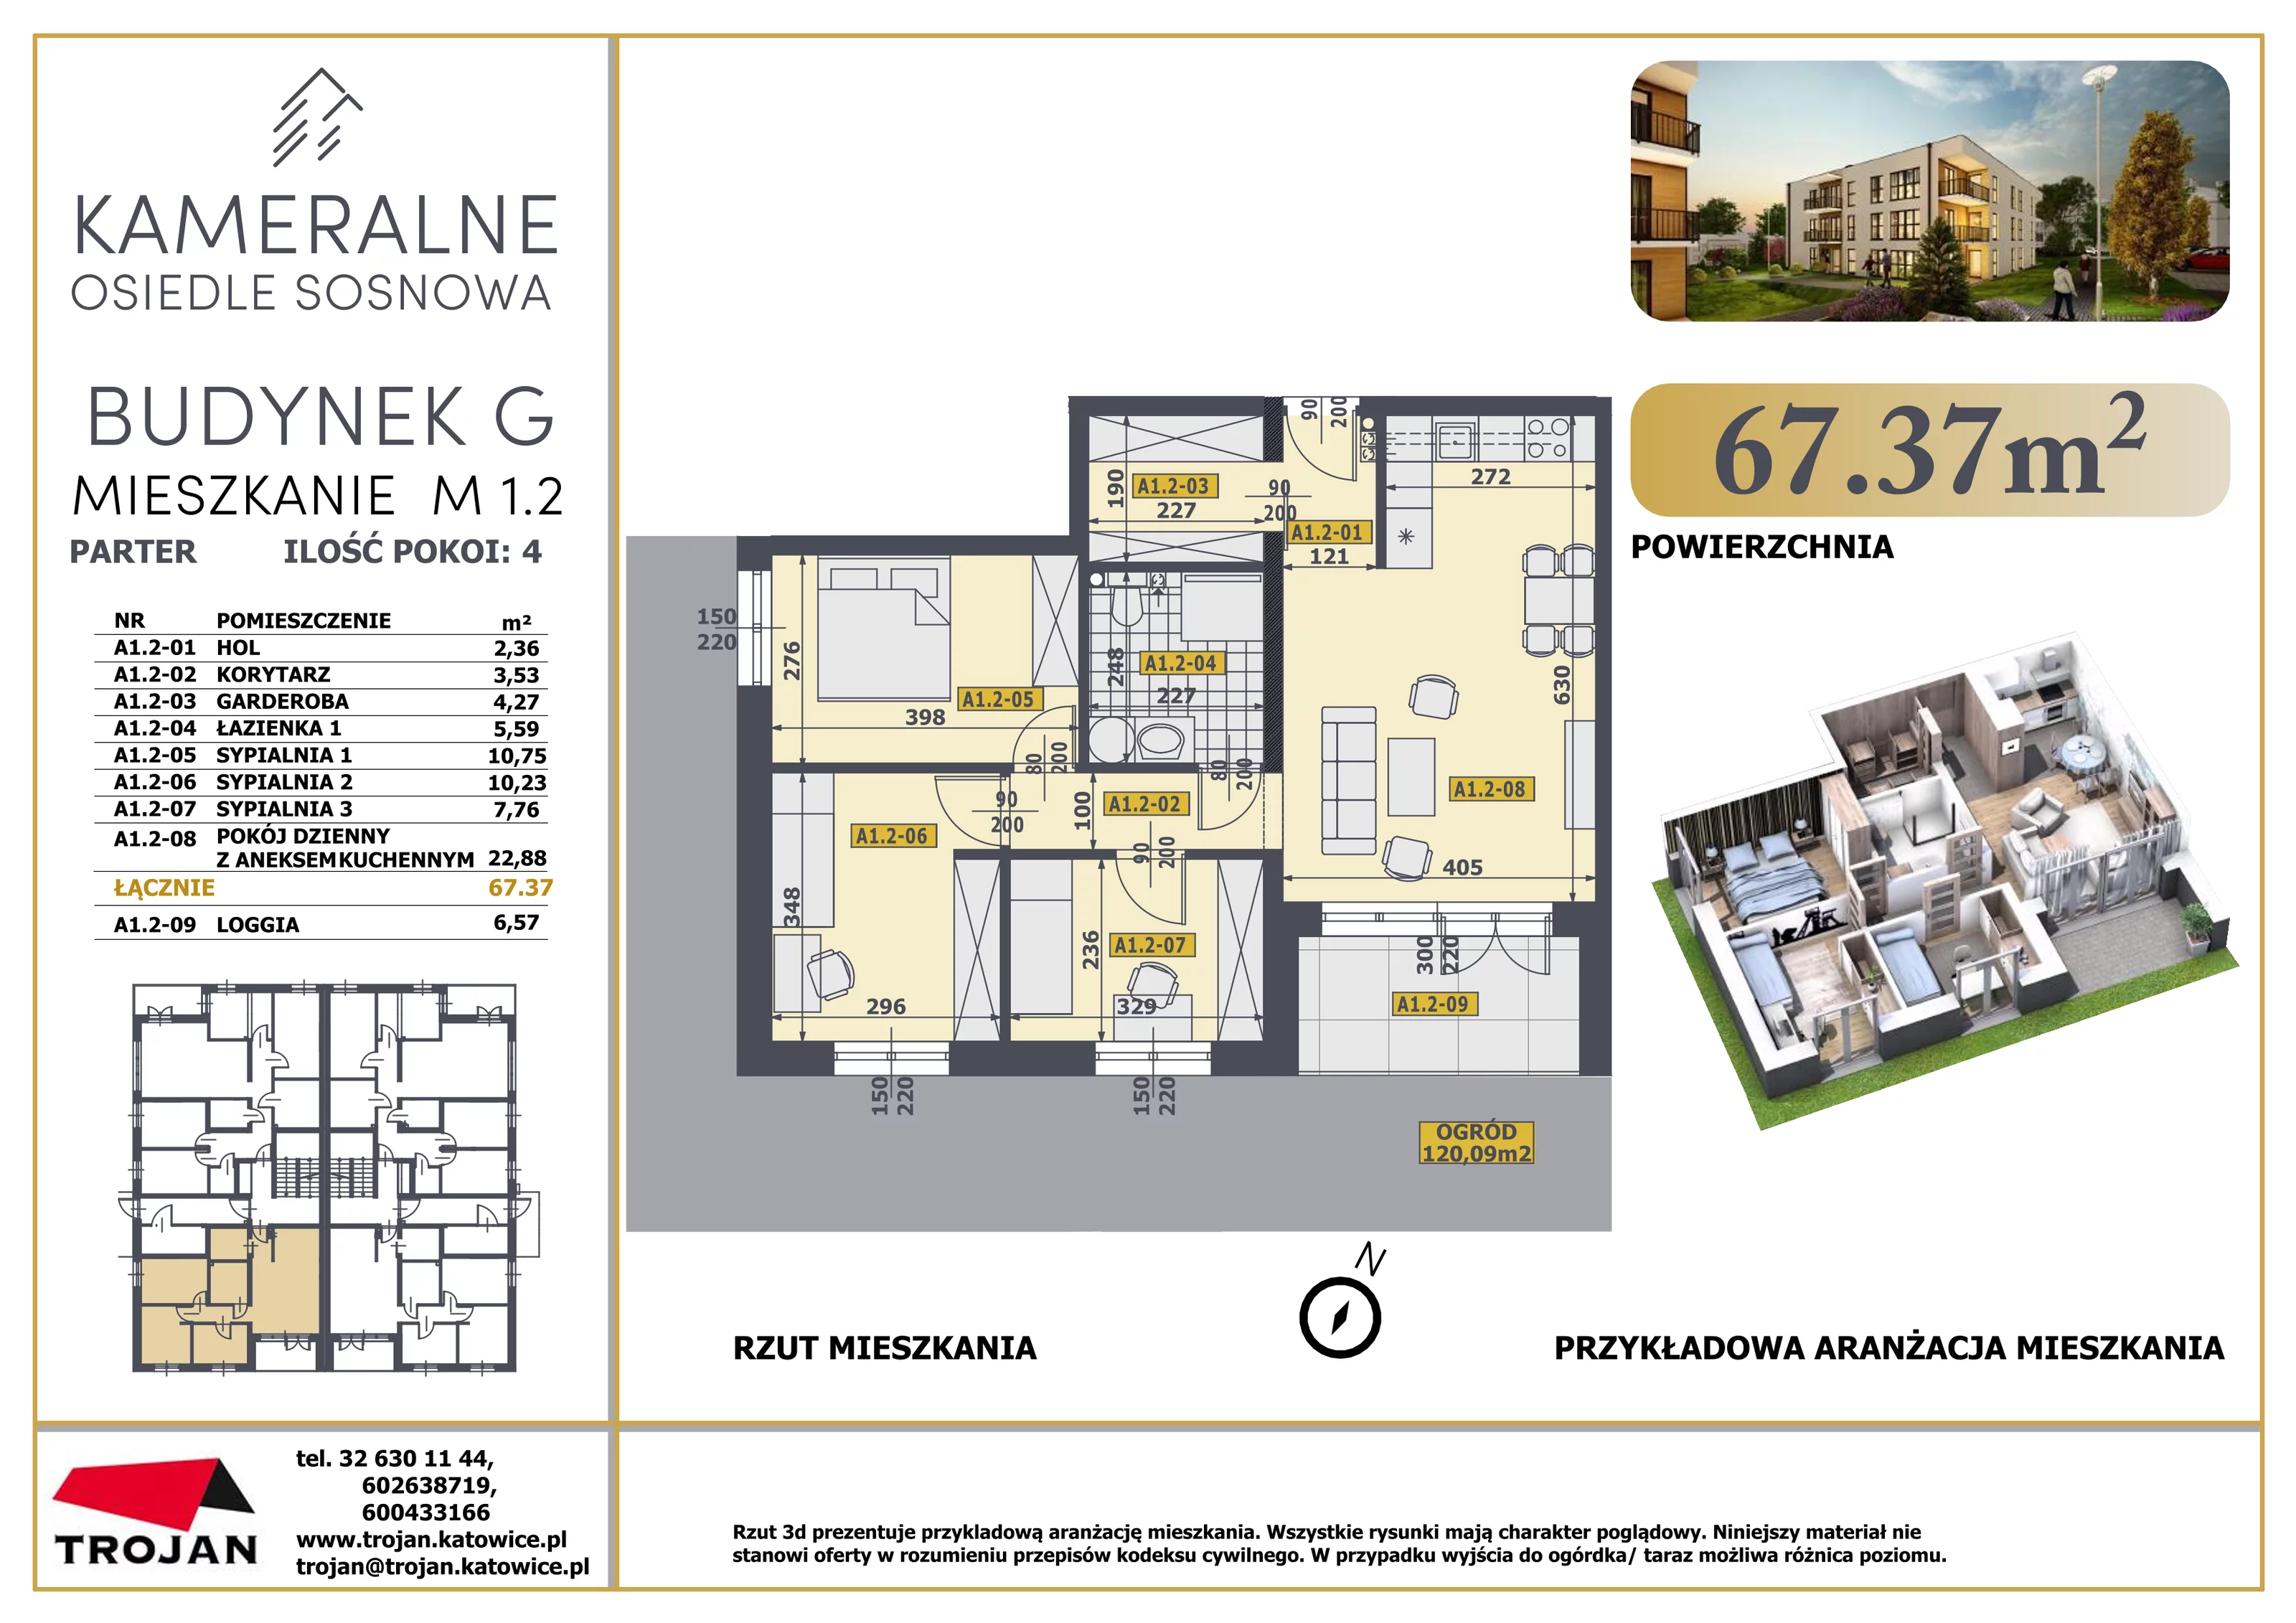 Mieszkanie 67,37 m², parter, oferta nr M 1.2, Osiedle Sosnowa, Rybnik, Paruszowiec-Piaski, ul. Sosnowa 20